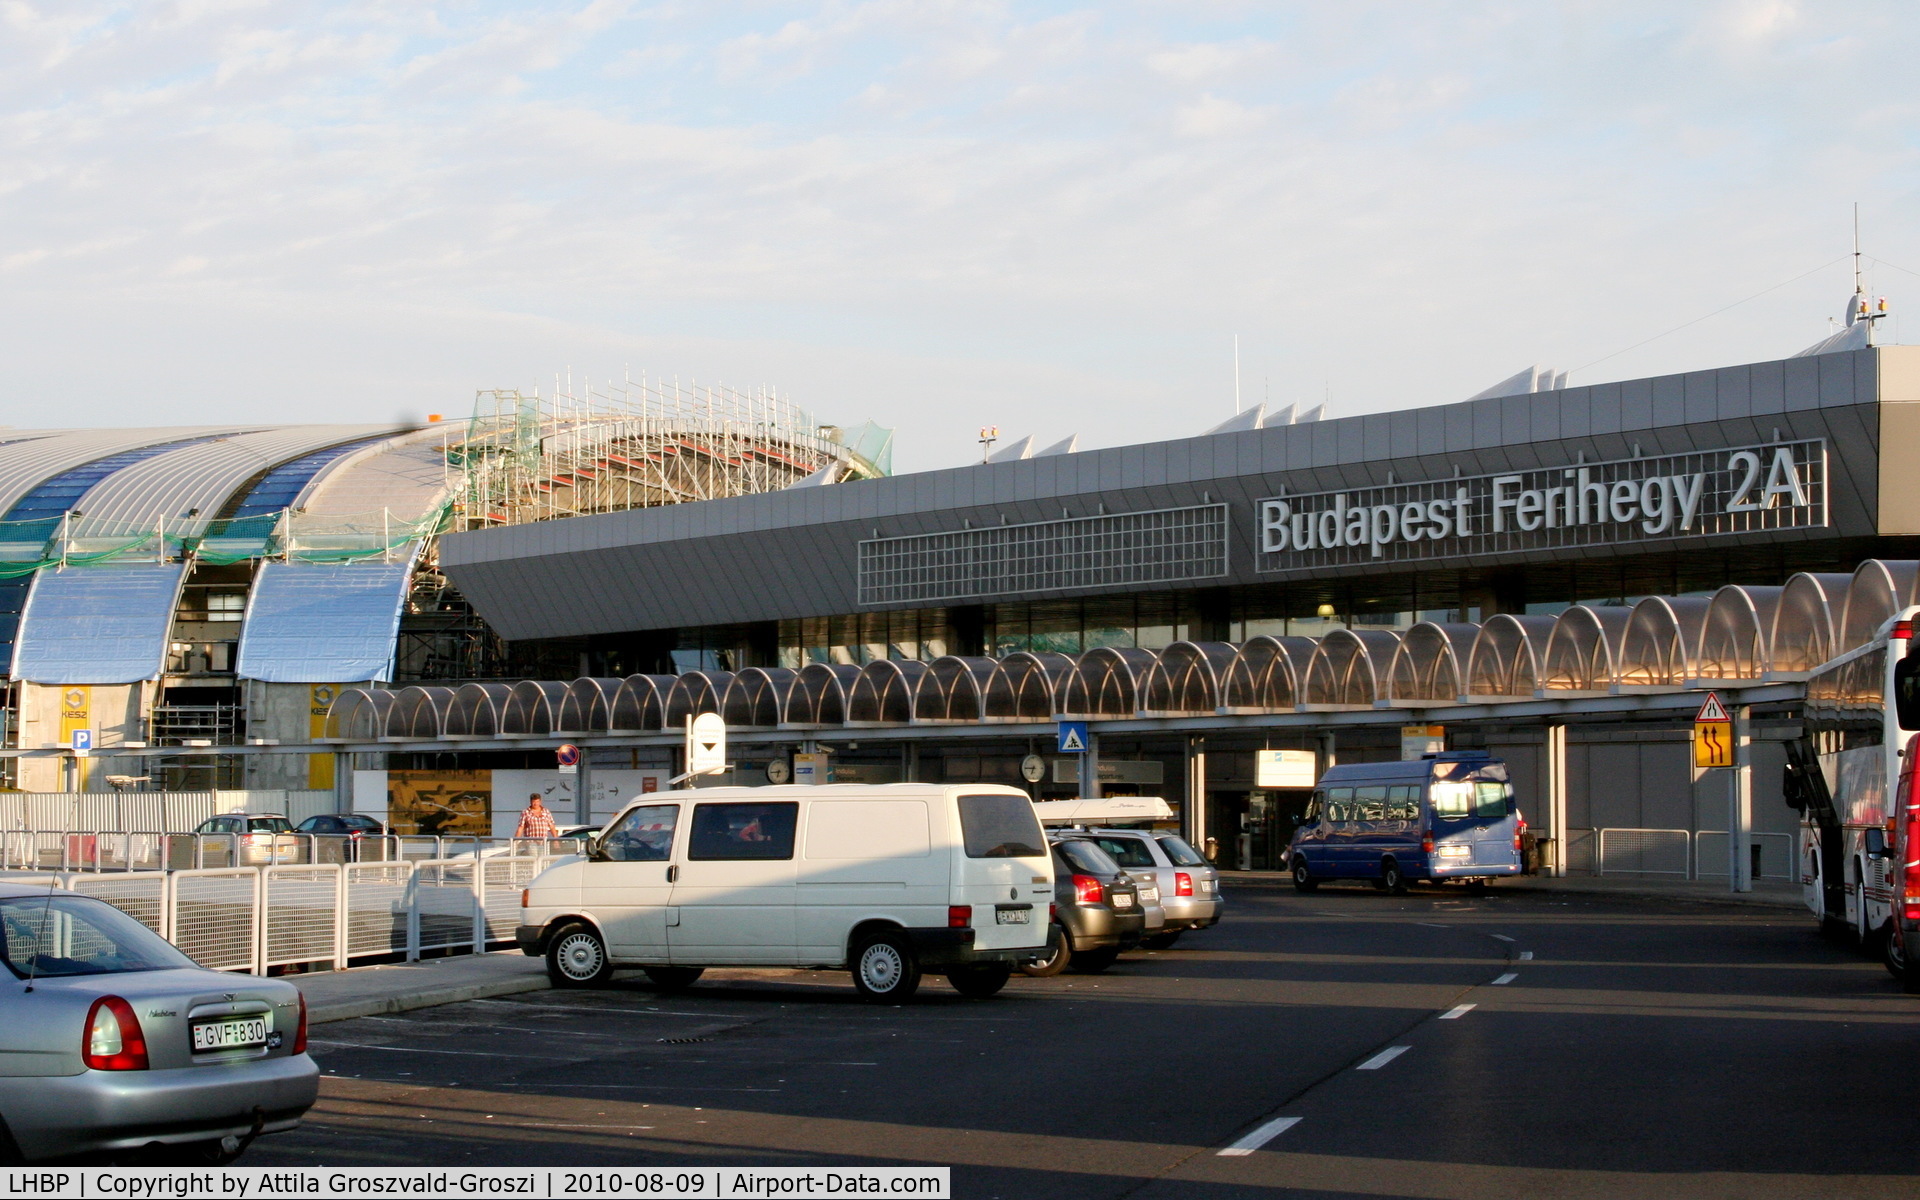 Budapest Ferihegy International Airport, Budapest Hungary (LHBP) - Budapest Internationale Airport, Ferihegy II.A Terminal